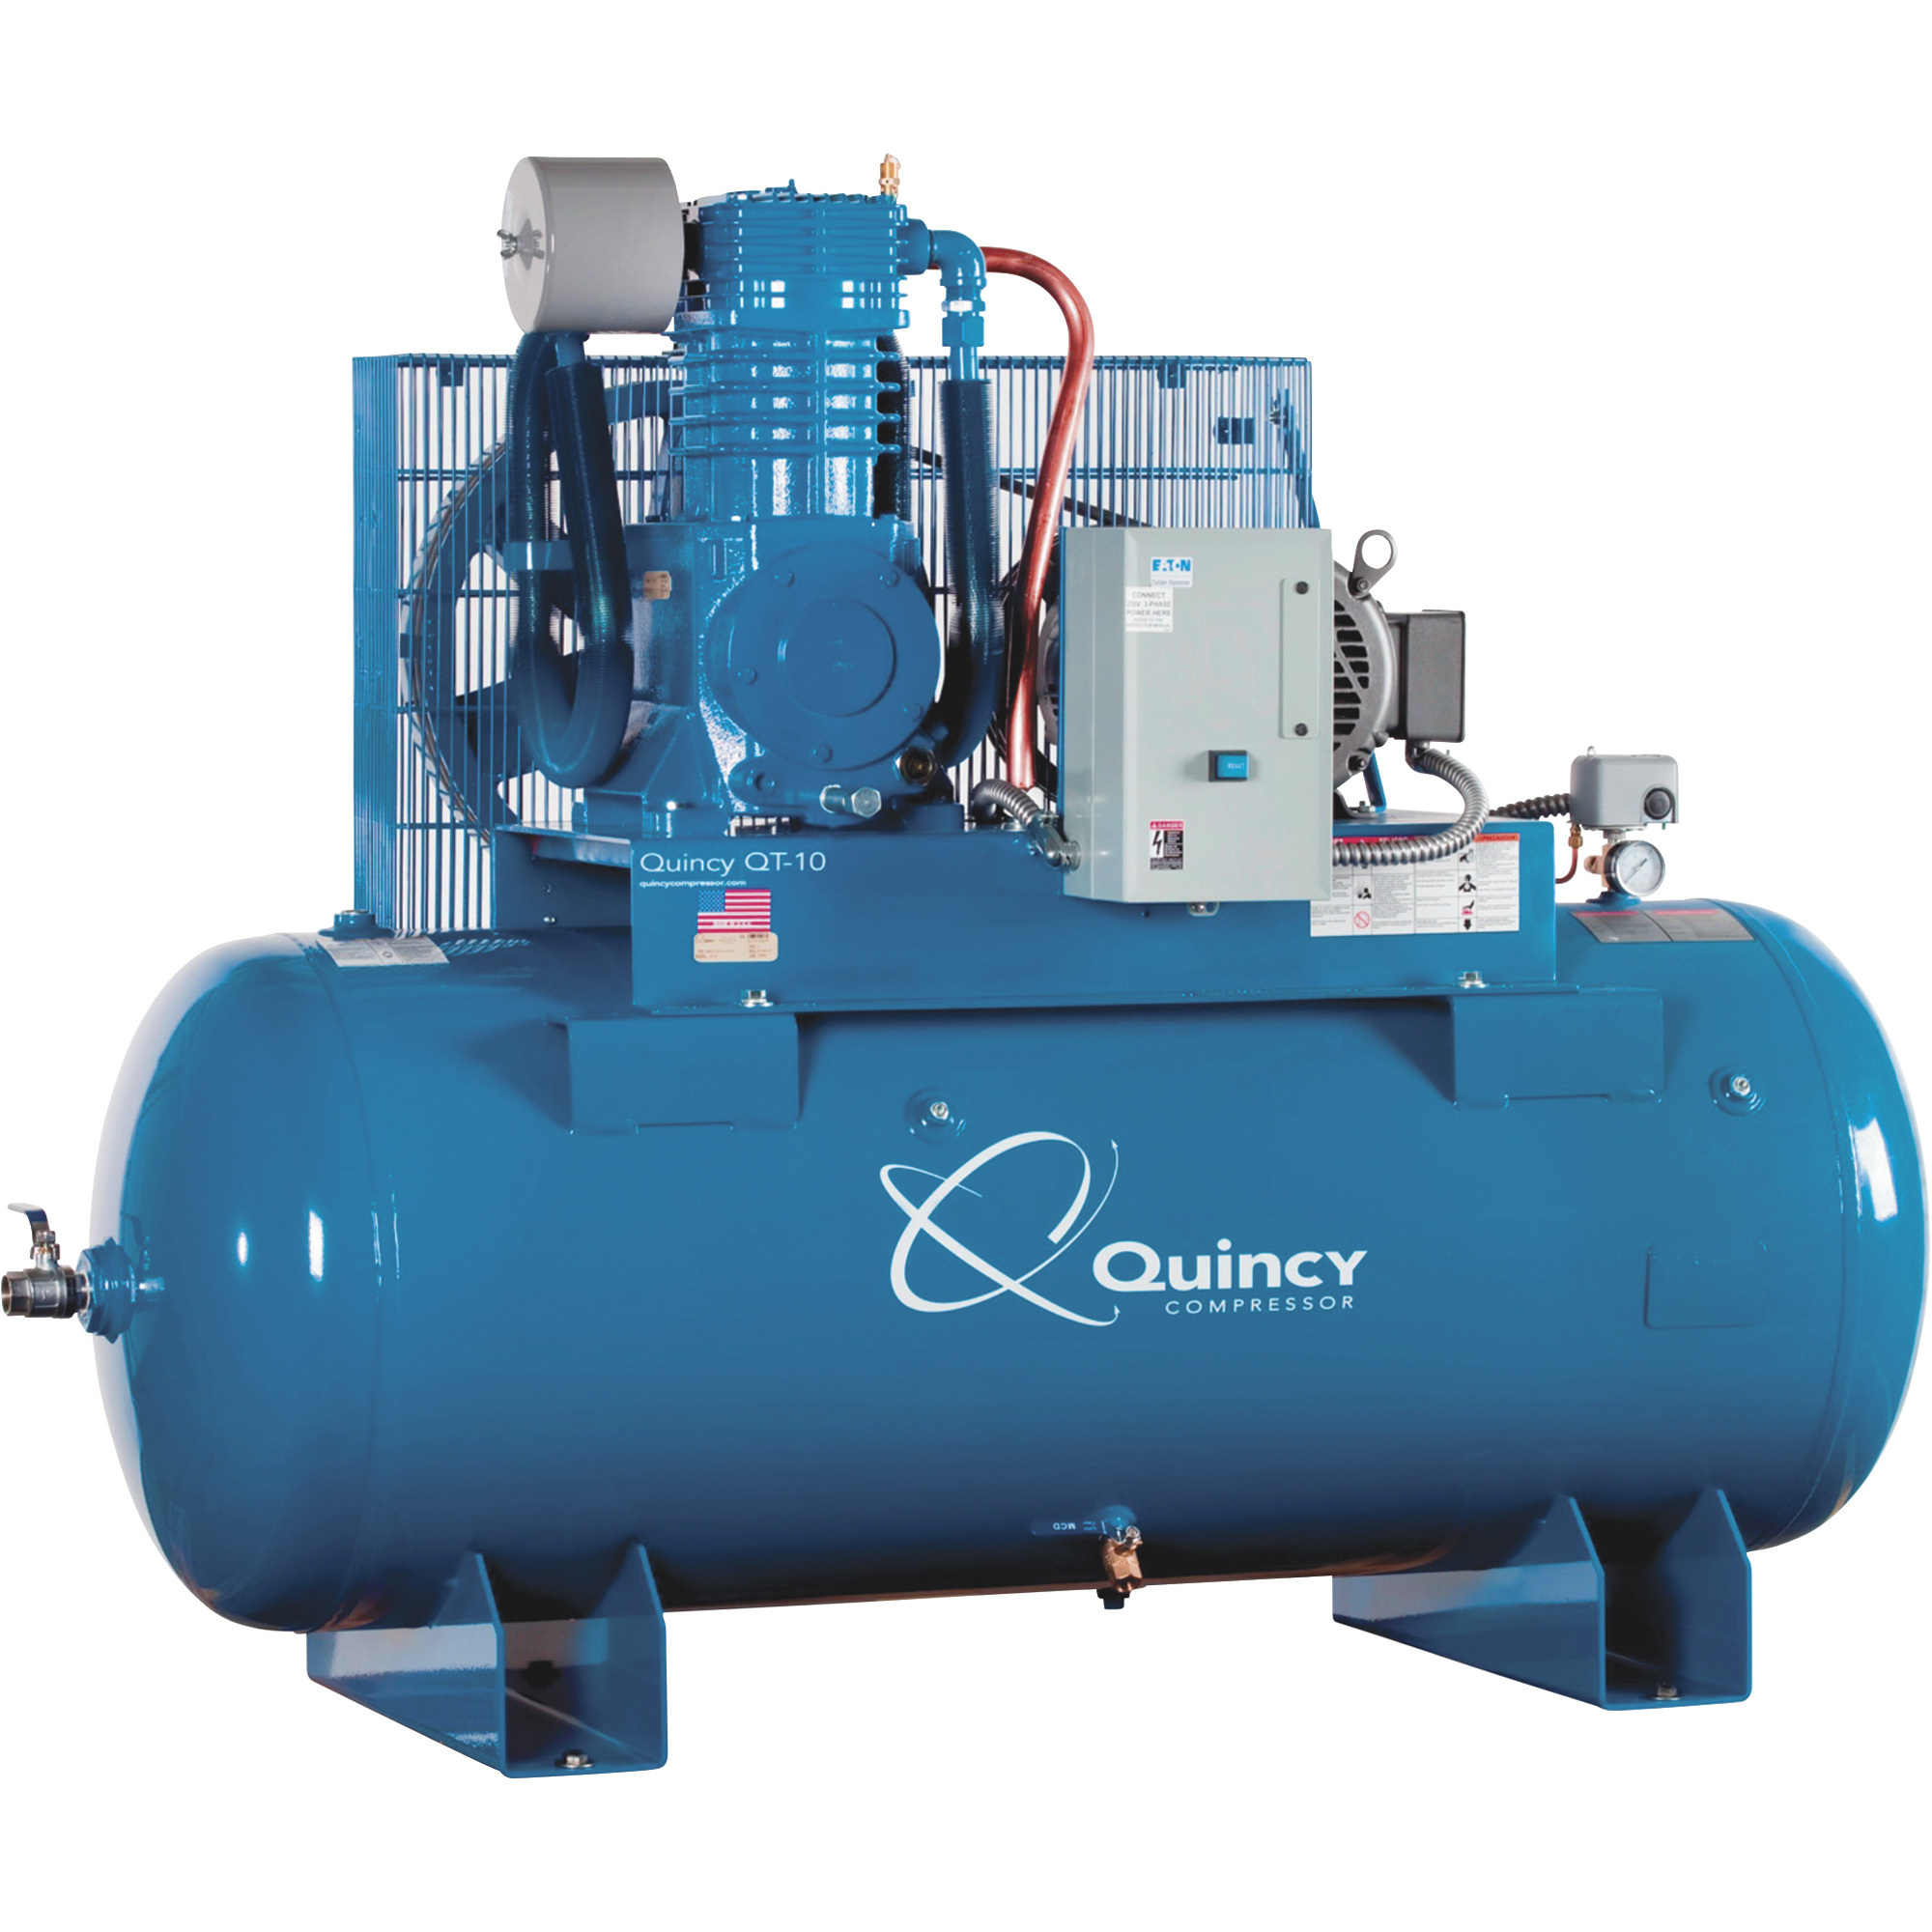 Quincy Compressor 2020014106